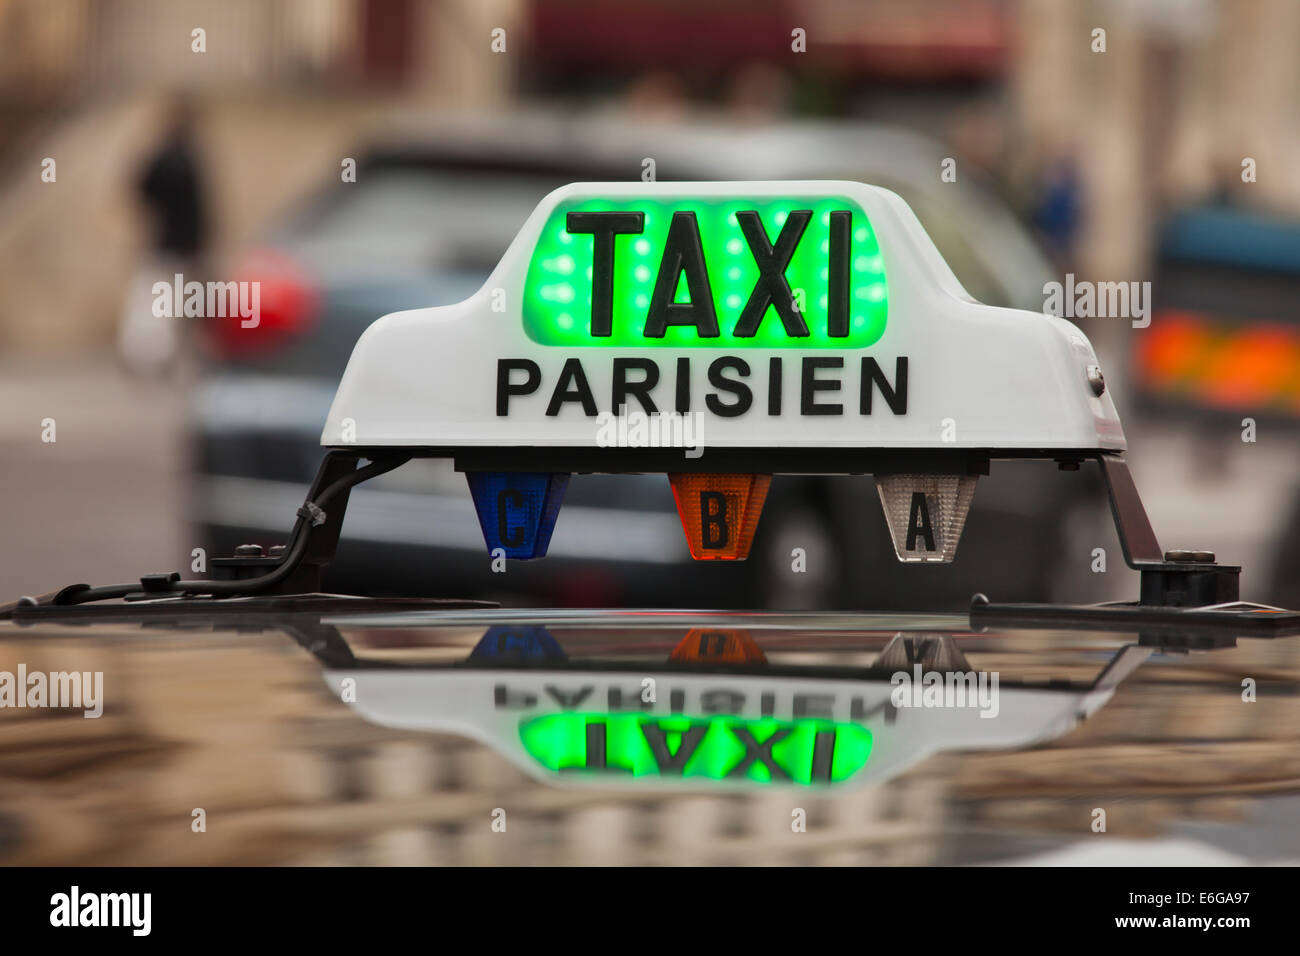 paris taxi sign on a car Stock Photo